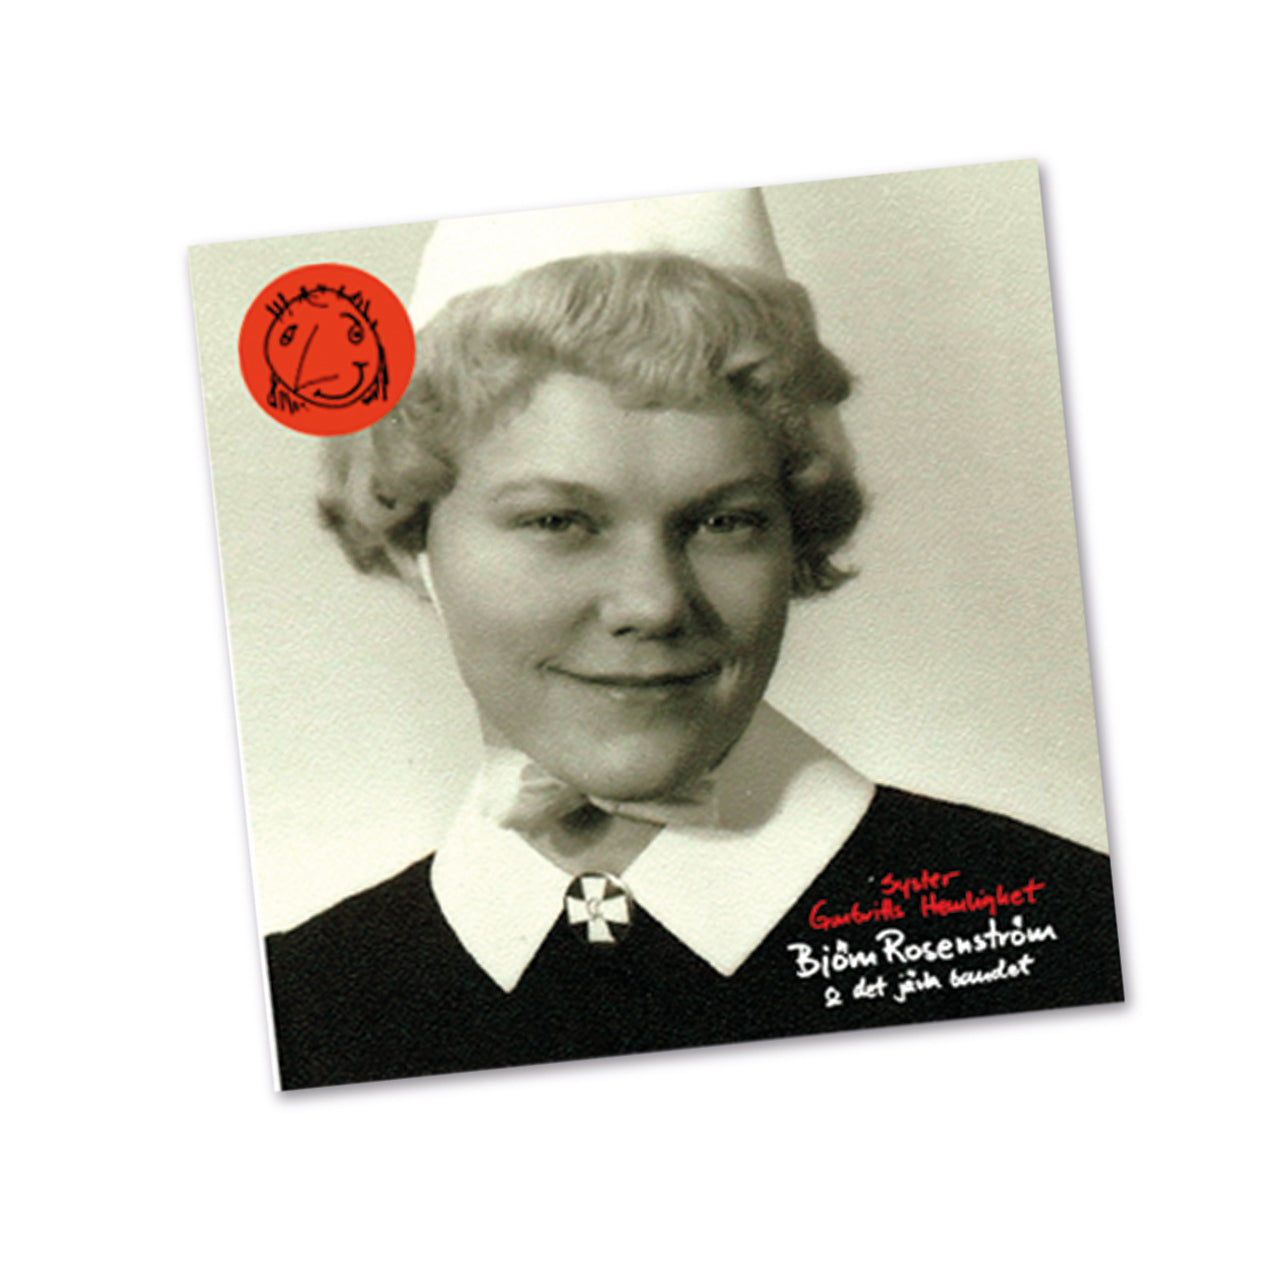 Syster Gunbritts hemlighet Album-CD